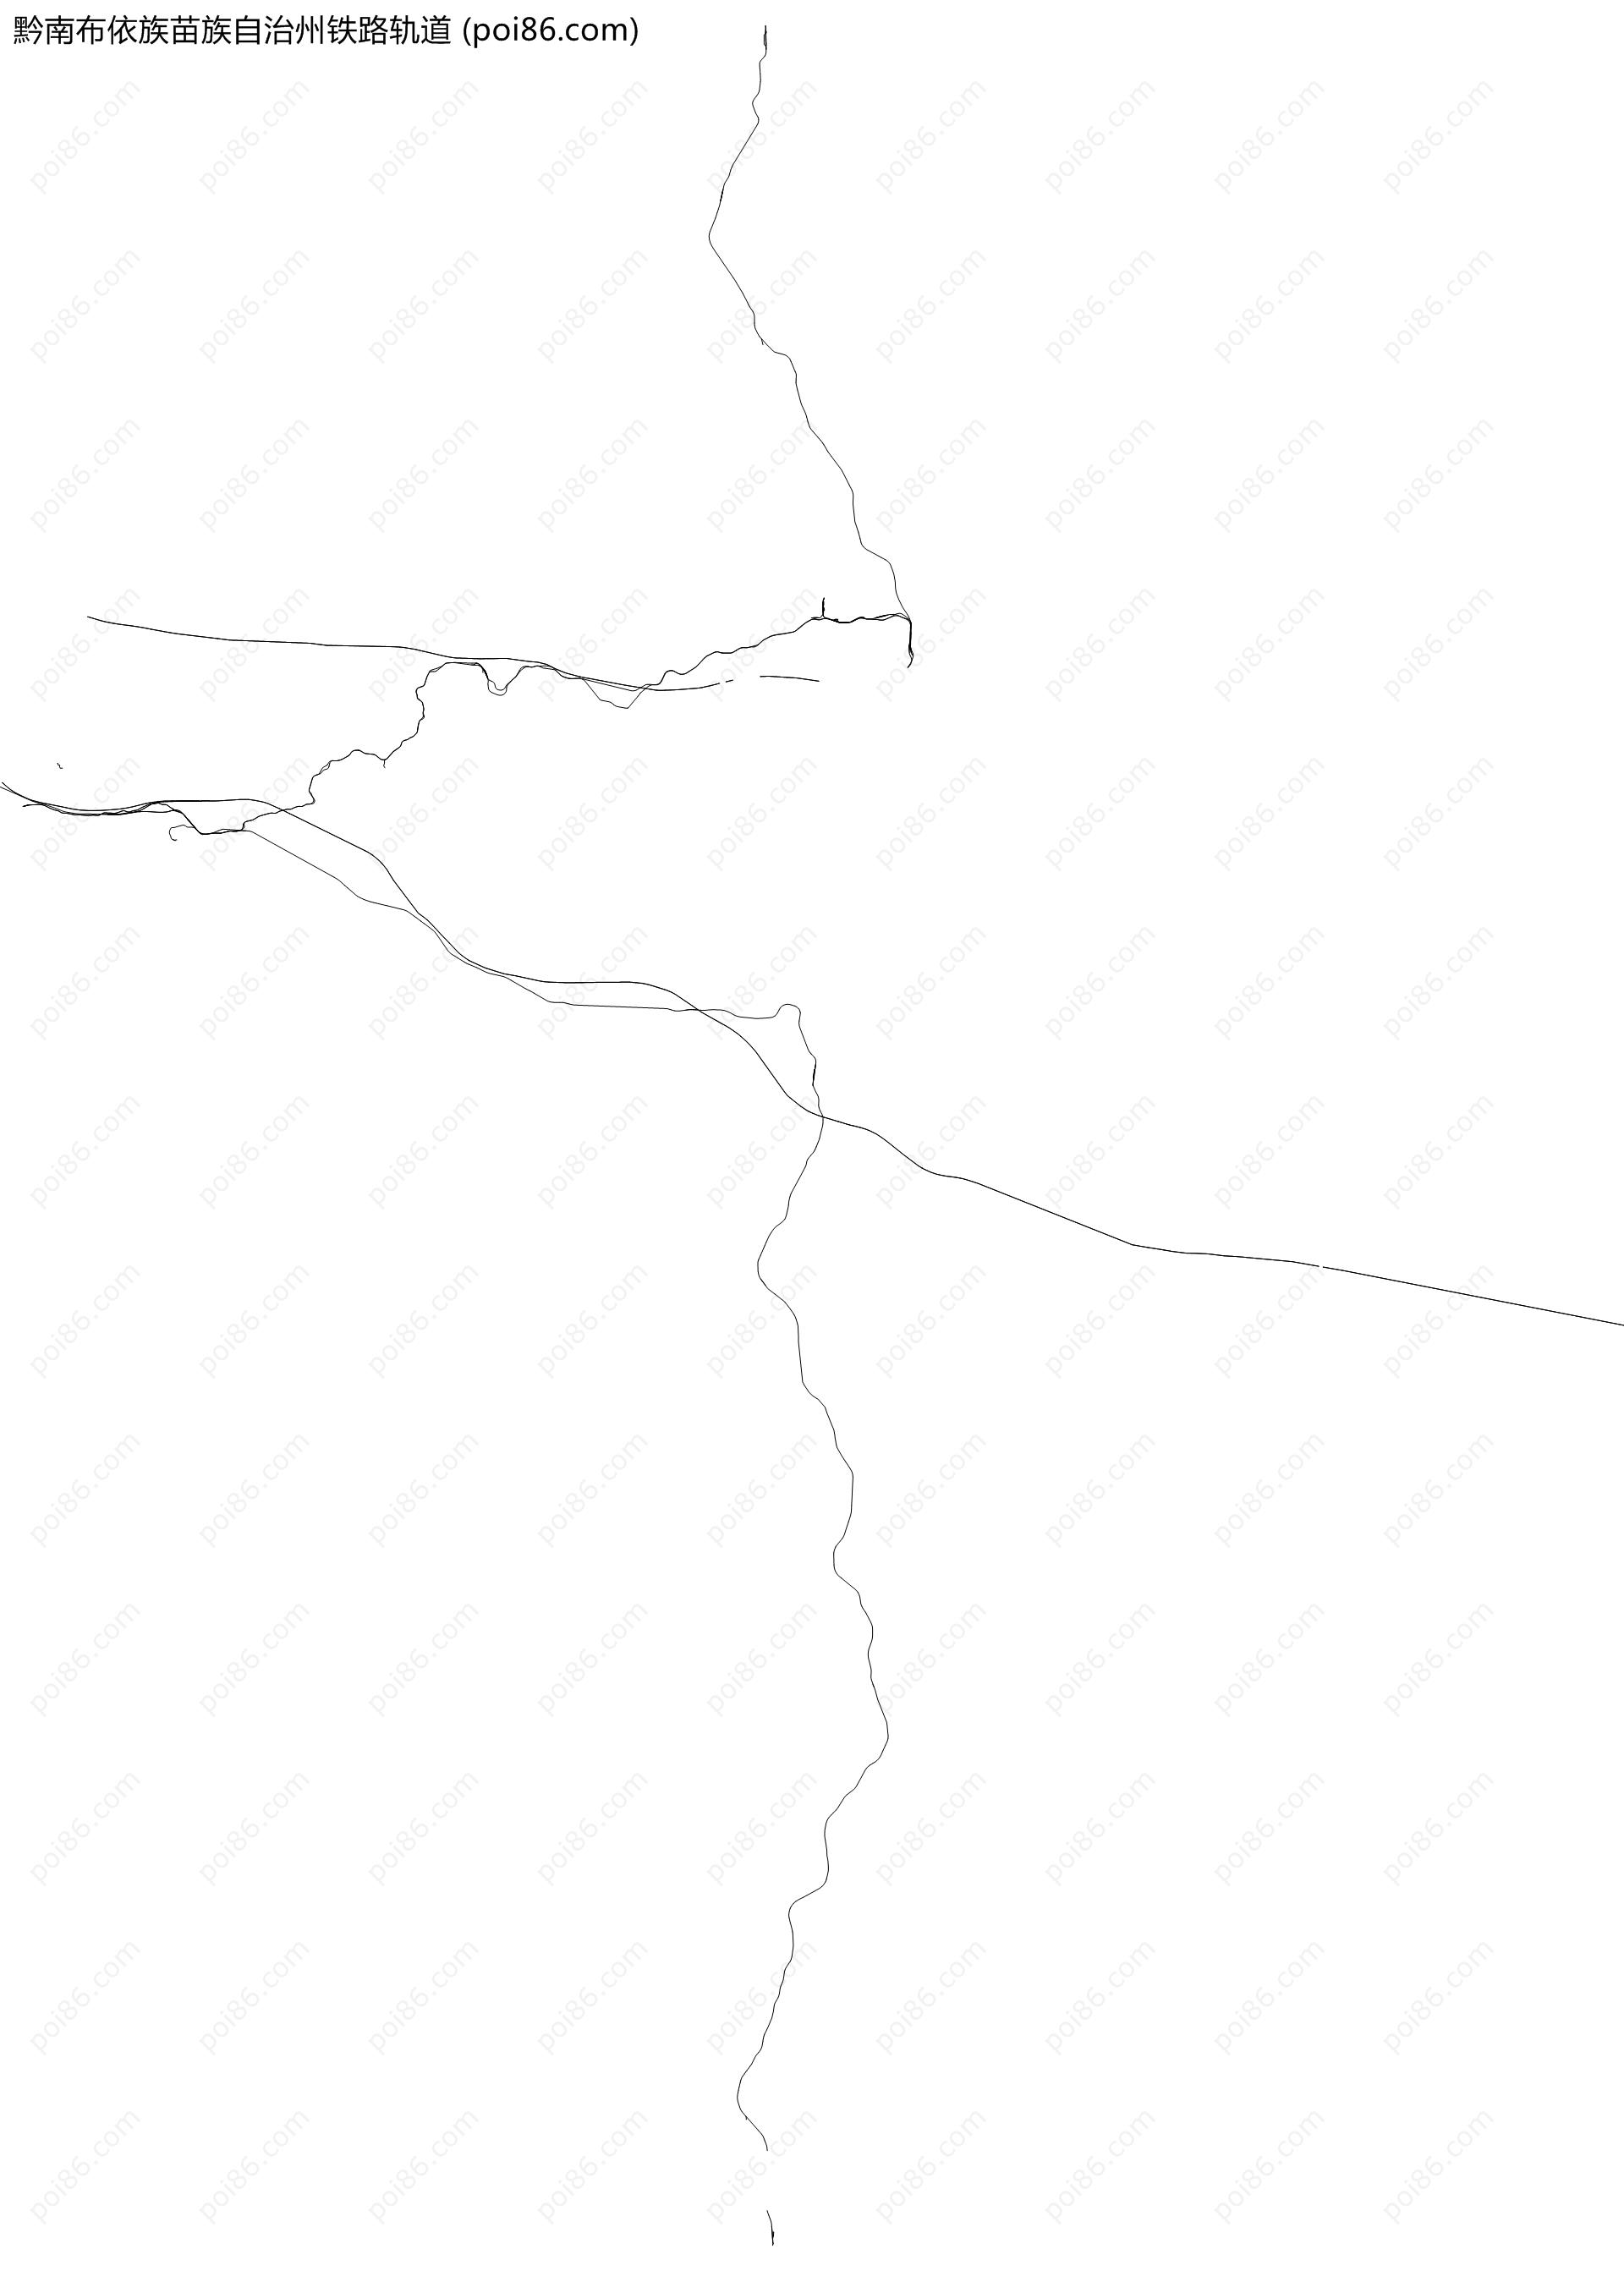 黔南布依族苗族自治州铁路轨道地图